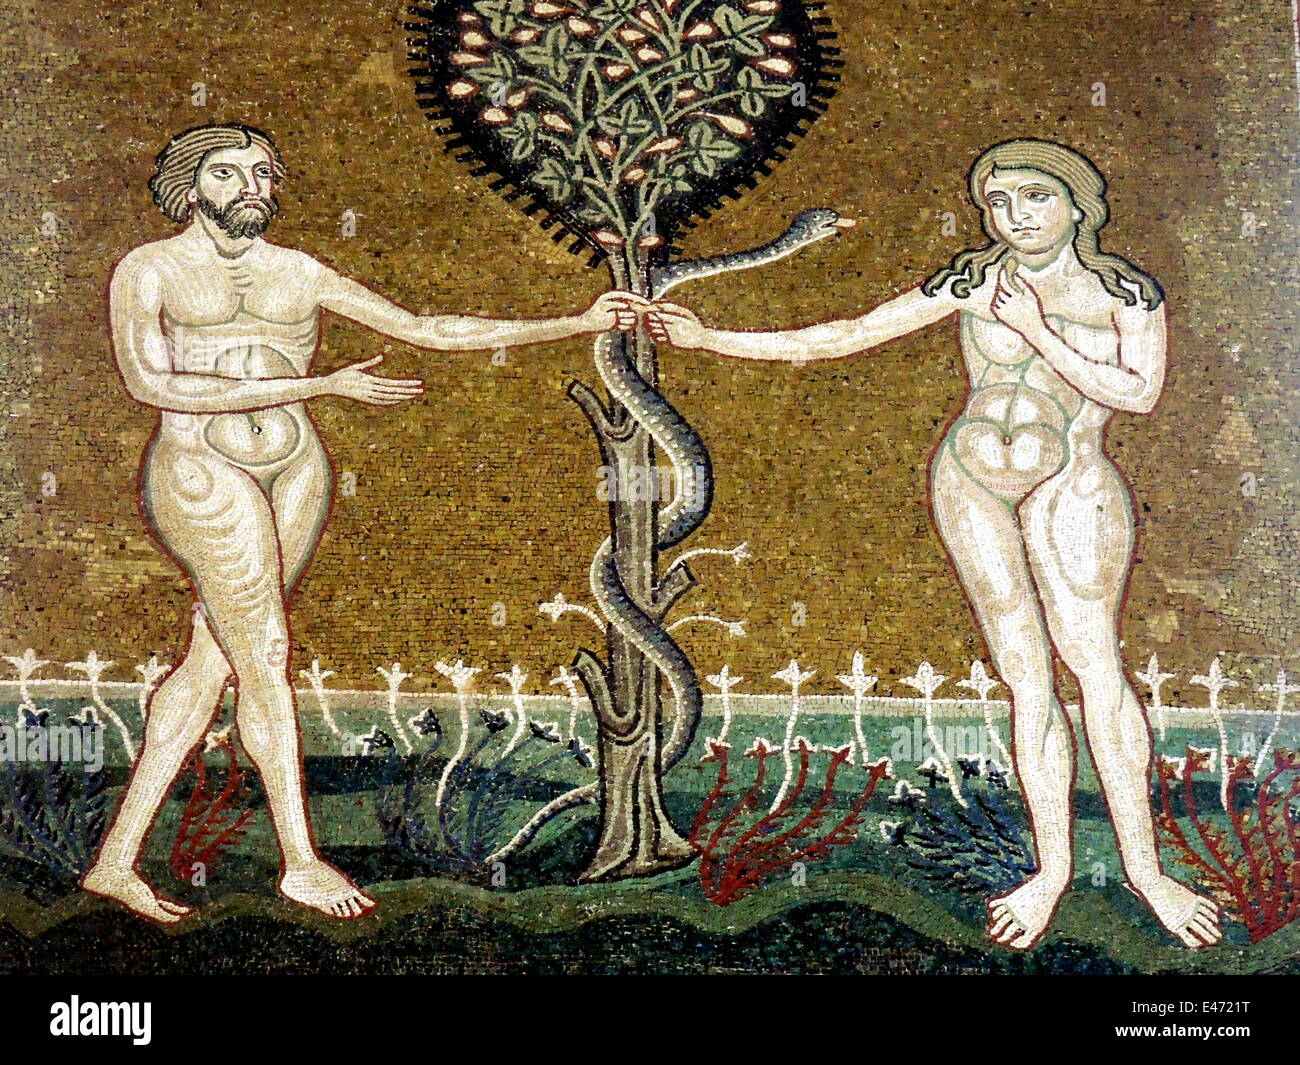 Mosaico la figura di Adamo ed Eva nella parte anteriore dell'albero della conoscenza nel Duomo normanno di Monreale (Sicilia). La foto è stata scattata il 25 maggio 2014. Foto Stock